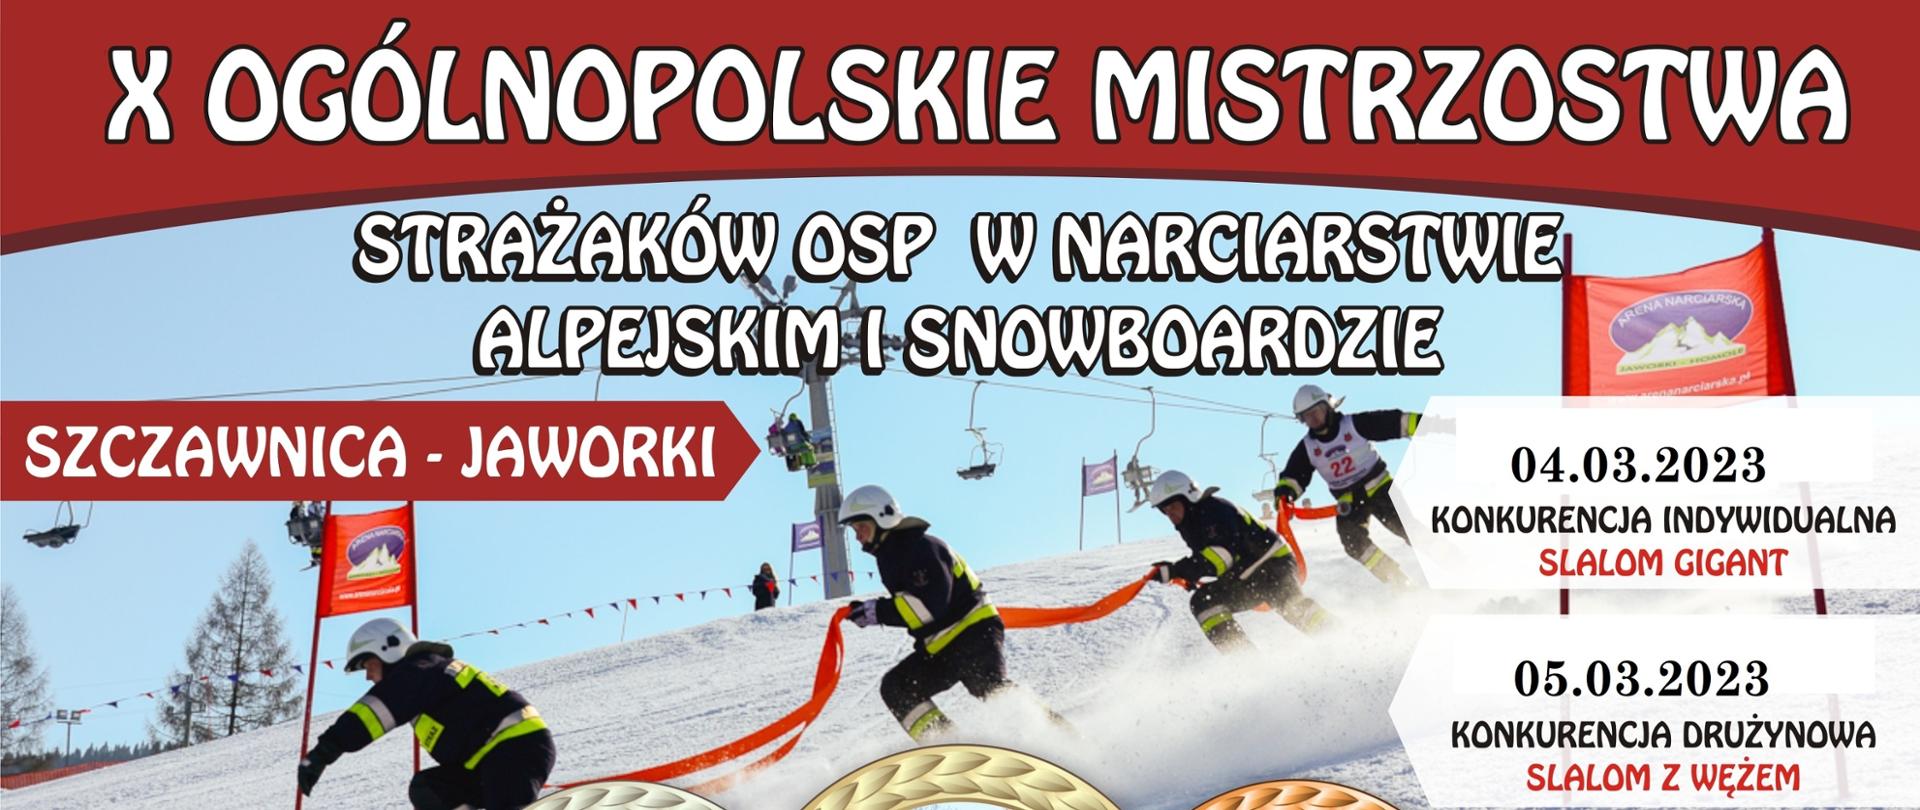 Na zdjęciu widoczny jest plakat X Ogólnopolskich Mistrzostw Strażaków OSP w narciarstwie alpejskim i snowboardzie. Oprócz tytułu zawodów plakat przedstawia czterech strażaków zjeżdżających na nartach, którzy w ręku trzymają odcinek węża strażackiego. Na dole plakatu umieszczono loga sponsorów.